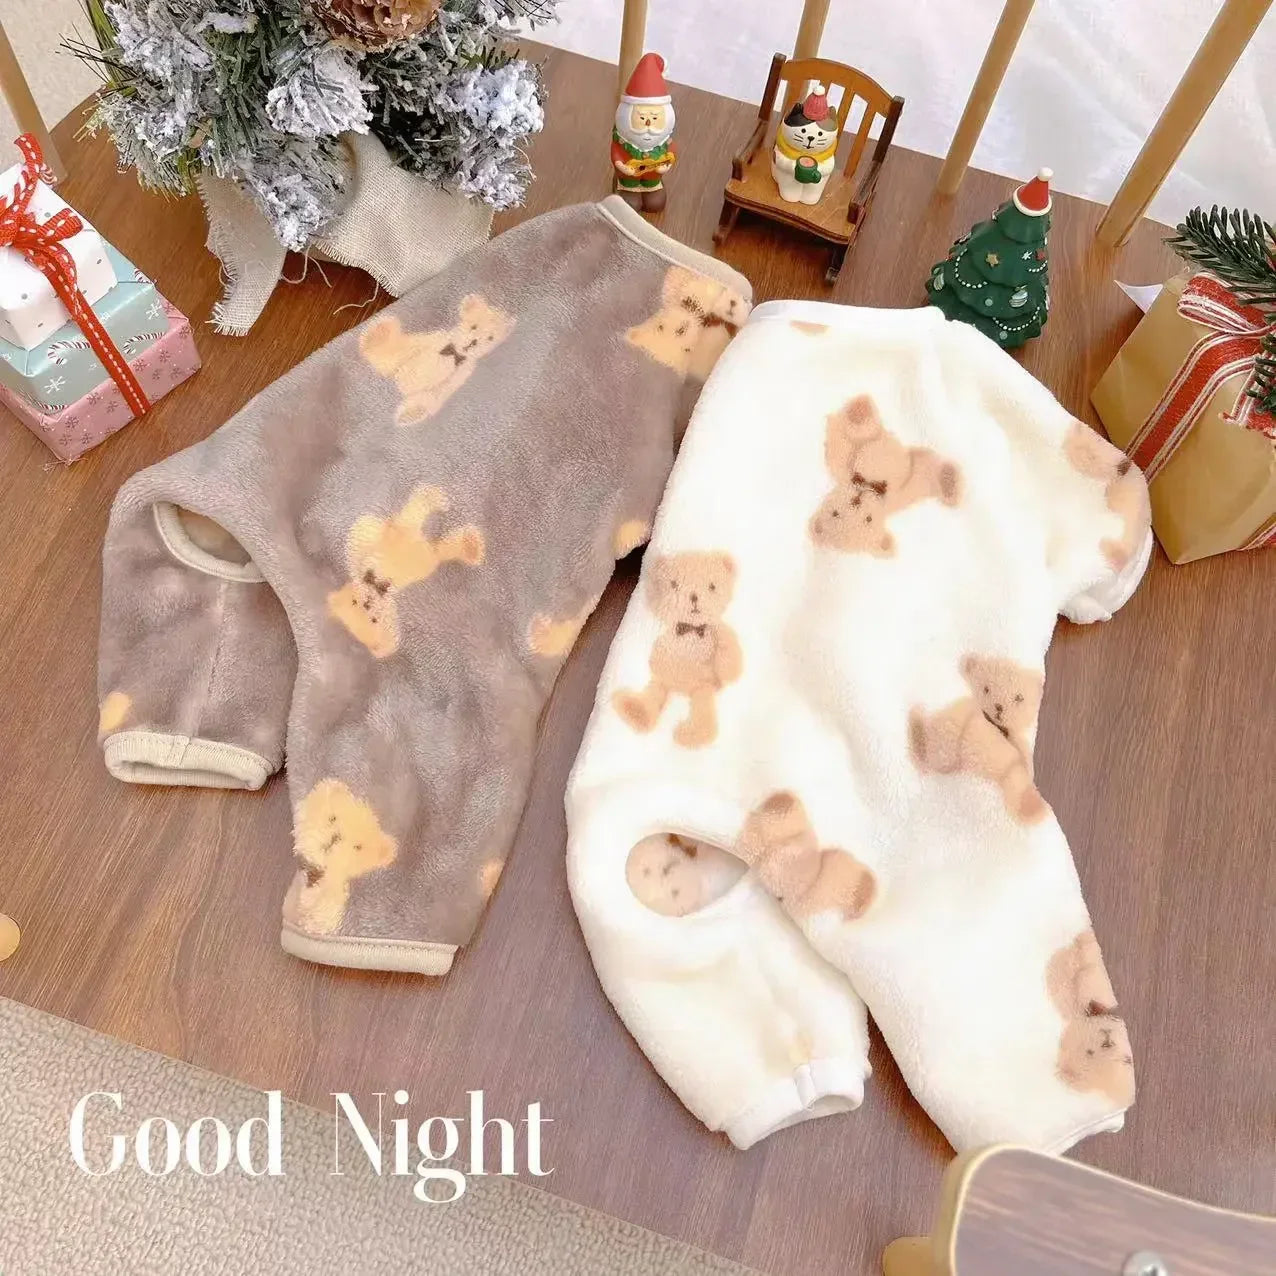 Pet Plush Jumpsuit: Cozy Winter Clothes for Small Pets  ourlum.com   